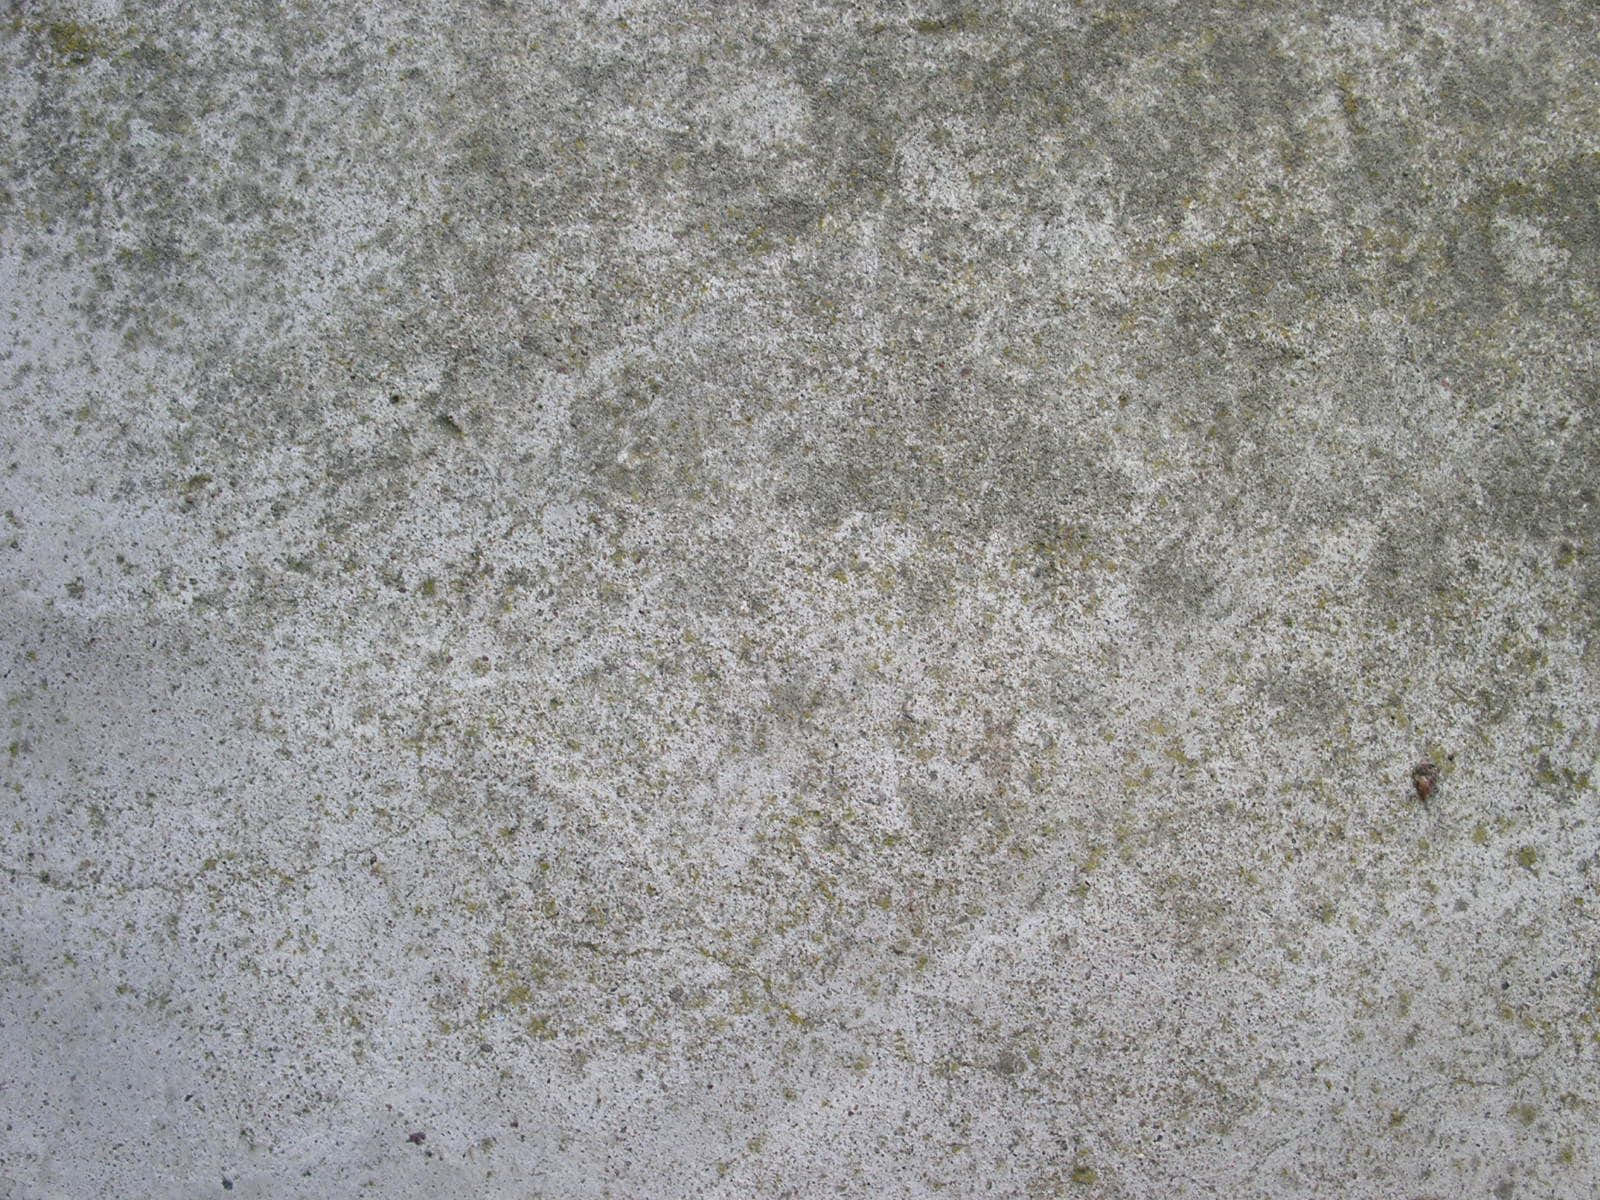 "Textural Gray Concrete Wall"